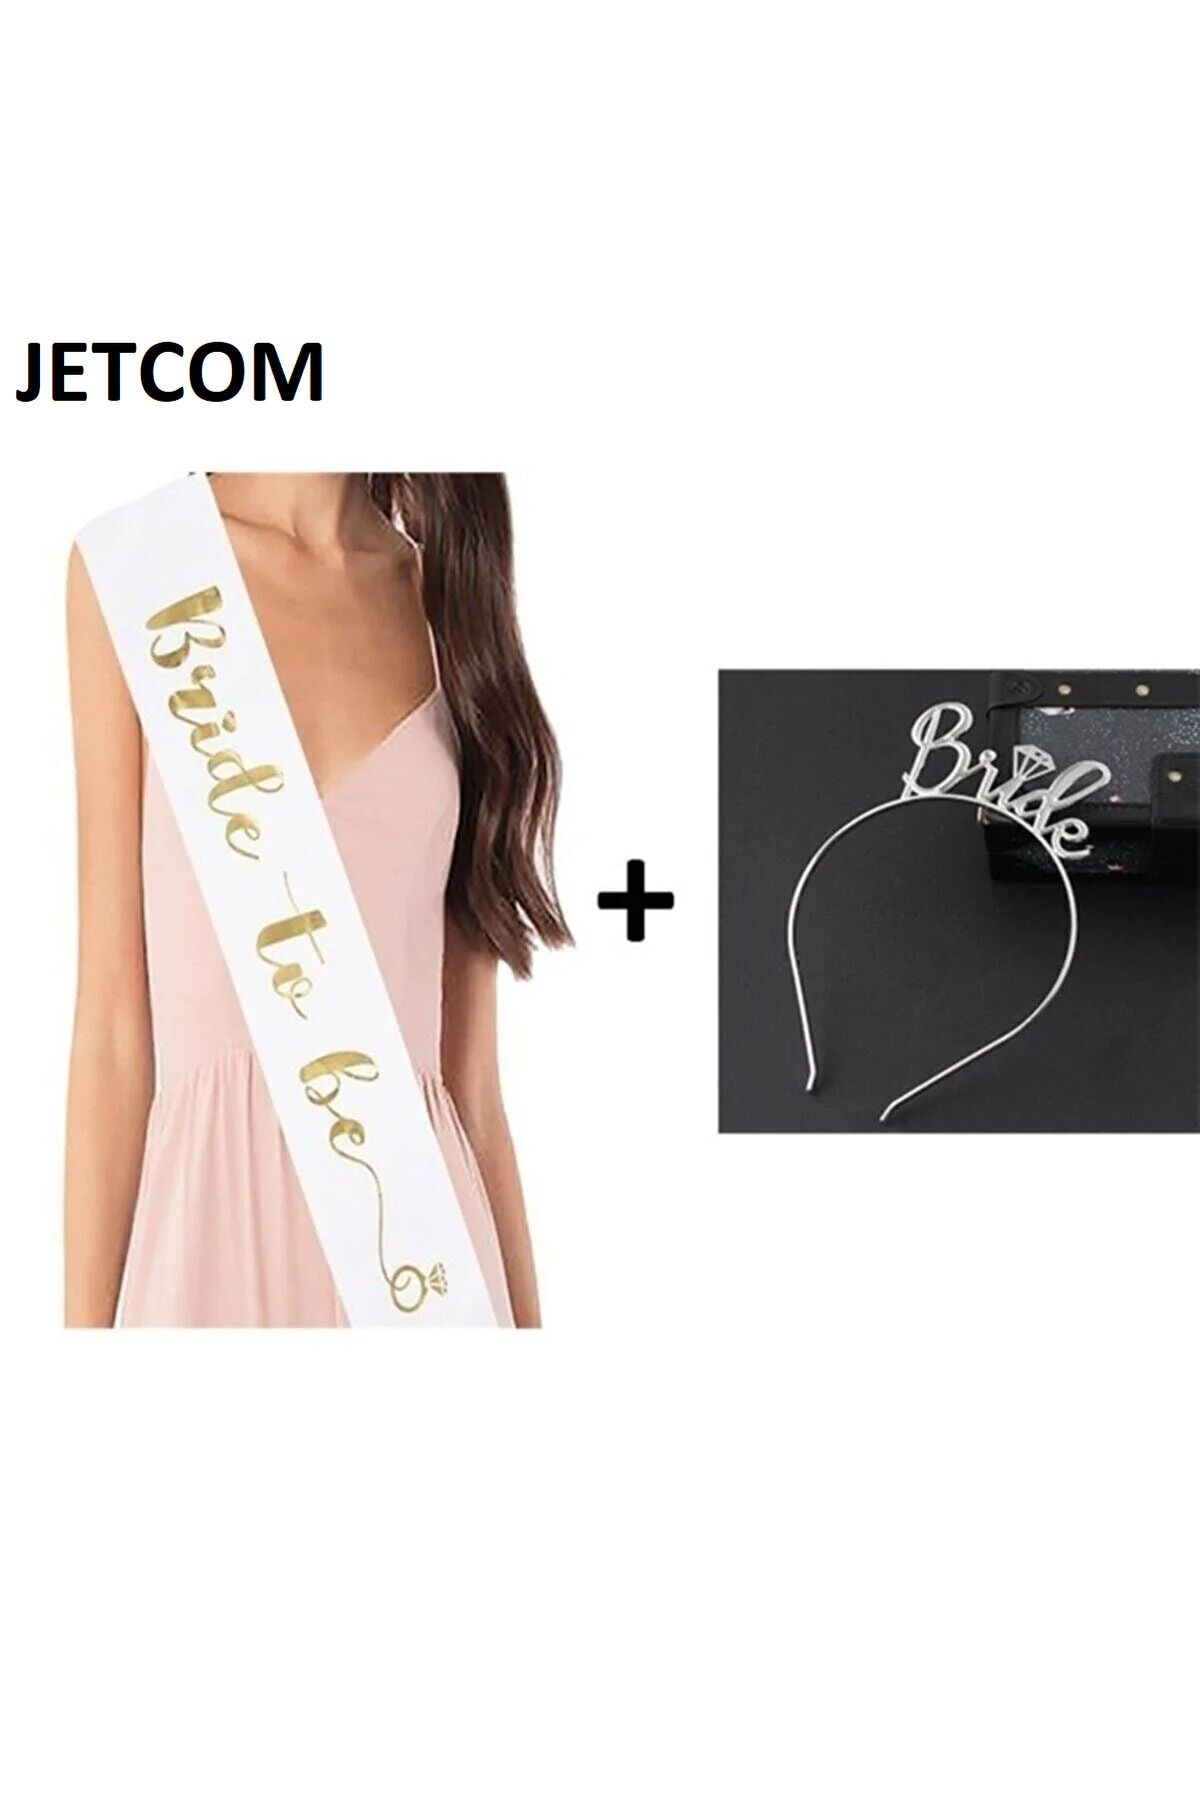 Jetcom Gümüş Metal Bride To Be Yazılı Taç Ve Kuşak Seti Bekarlığa Veda Partisi